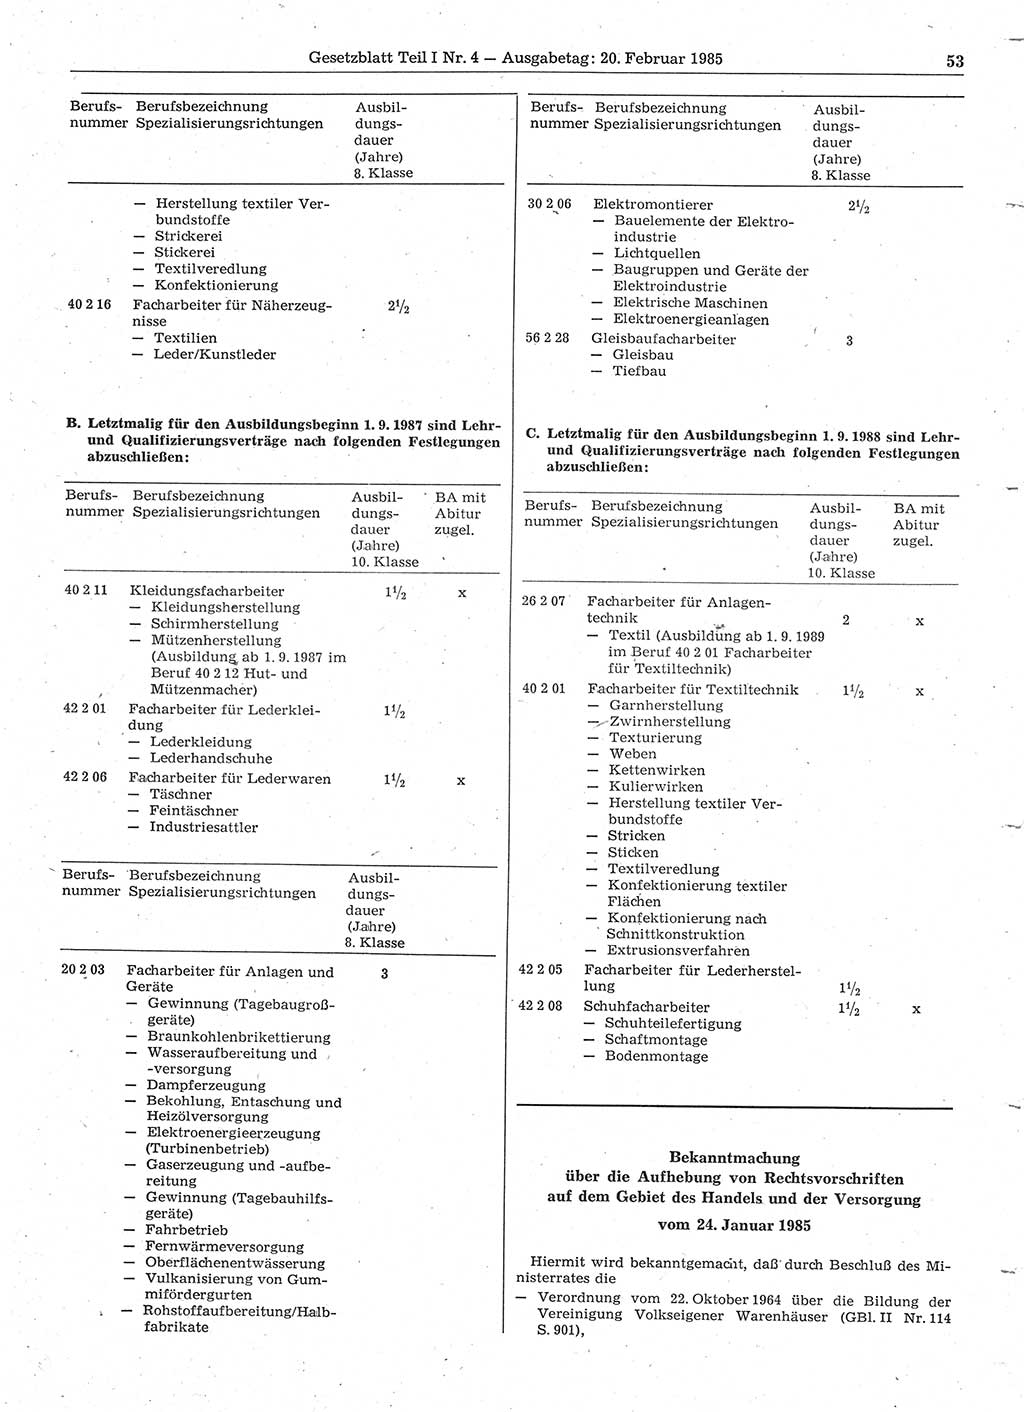 Gesetzblatt (GBl.) der Deutschen Demokratischen Republik (DDR) Teil Ⅰ 1985, Seite 53 (GBl. DDR Ⅰ 1985, S. 53)